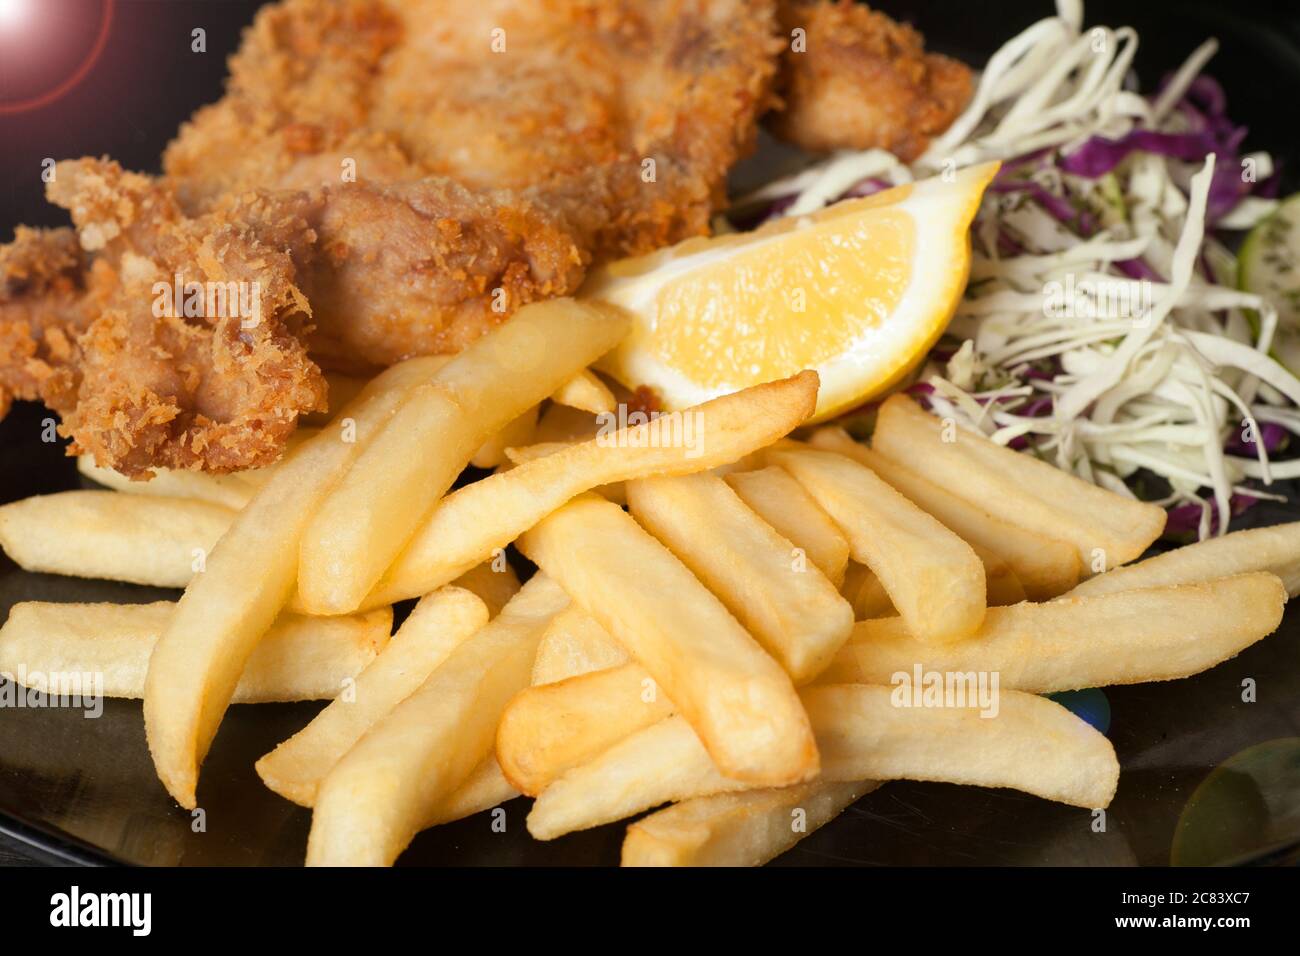 Nahaufnahme eines Teller mit Lebensmitteln, die gebratenes Huhn, Kartoffeln und Salate haben. Stockfoto